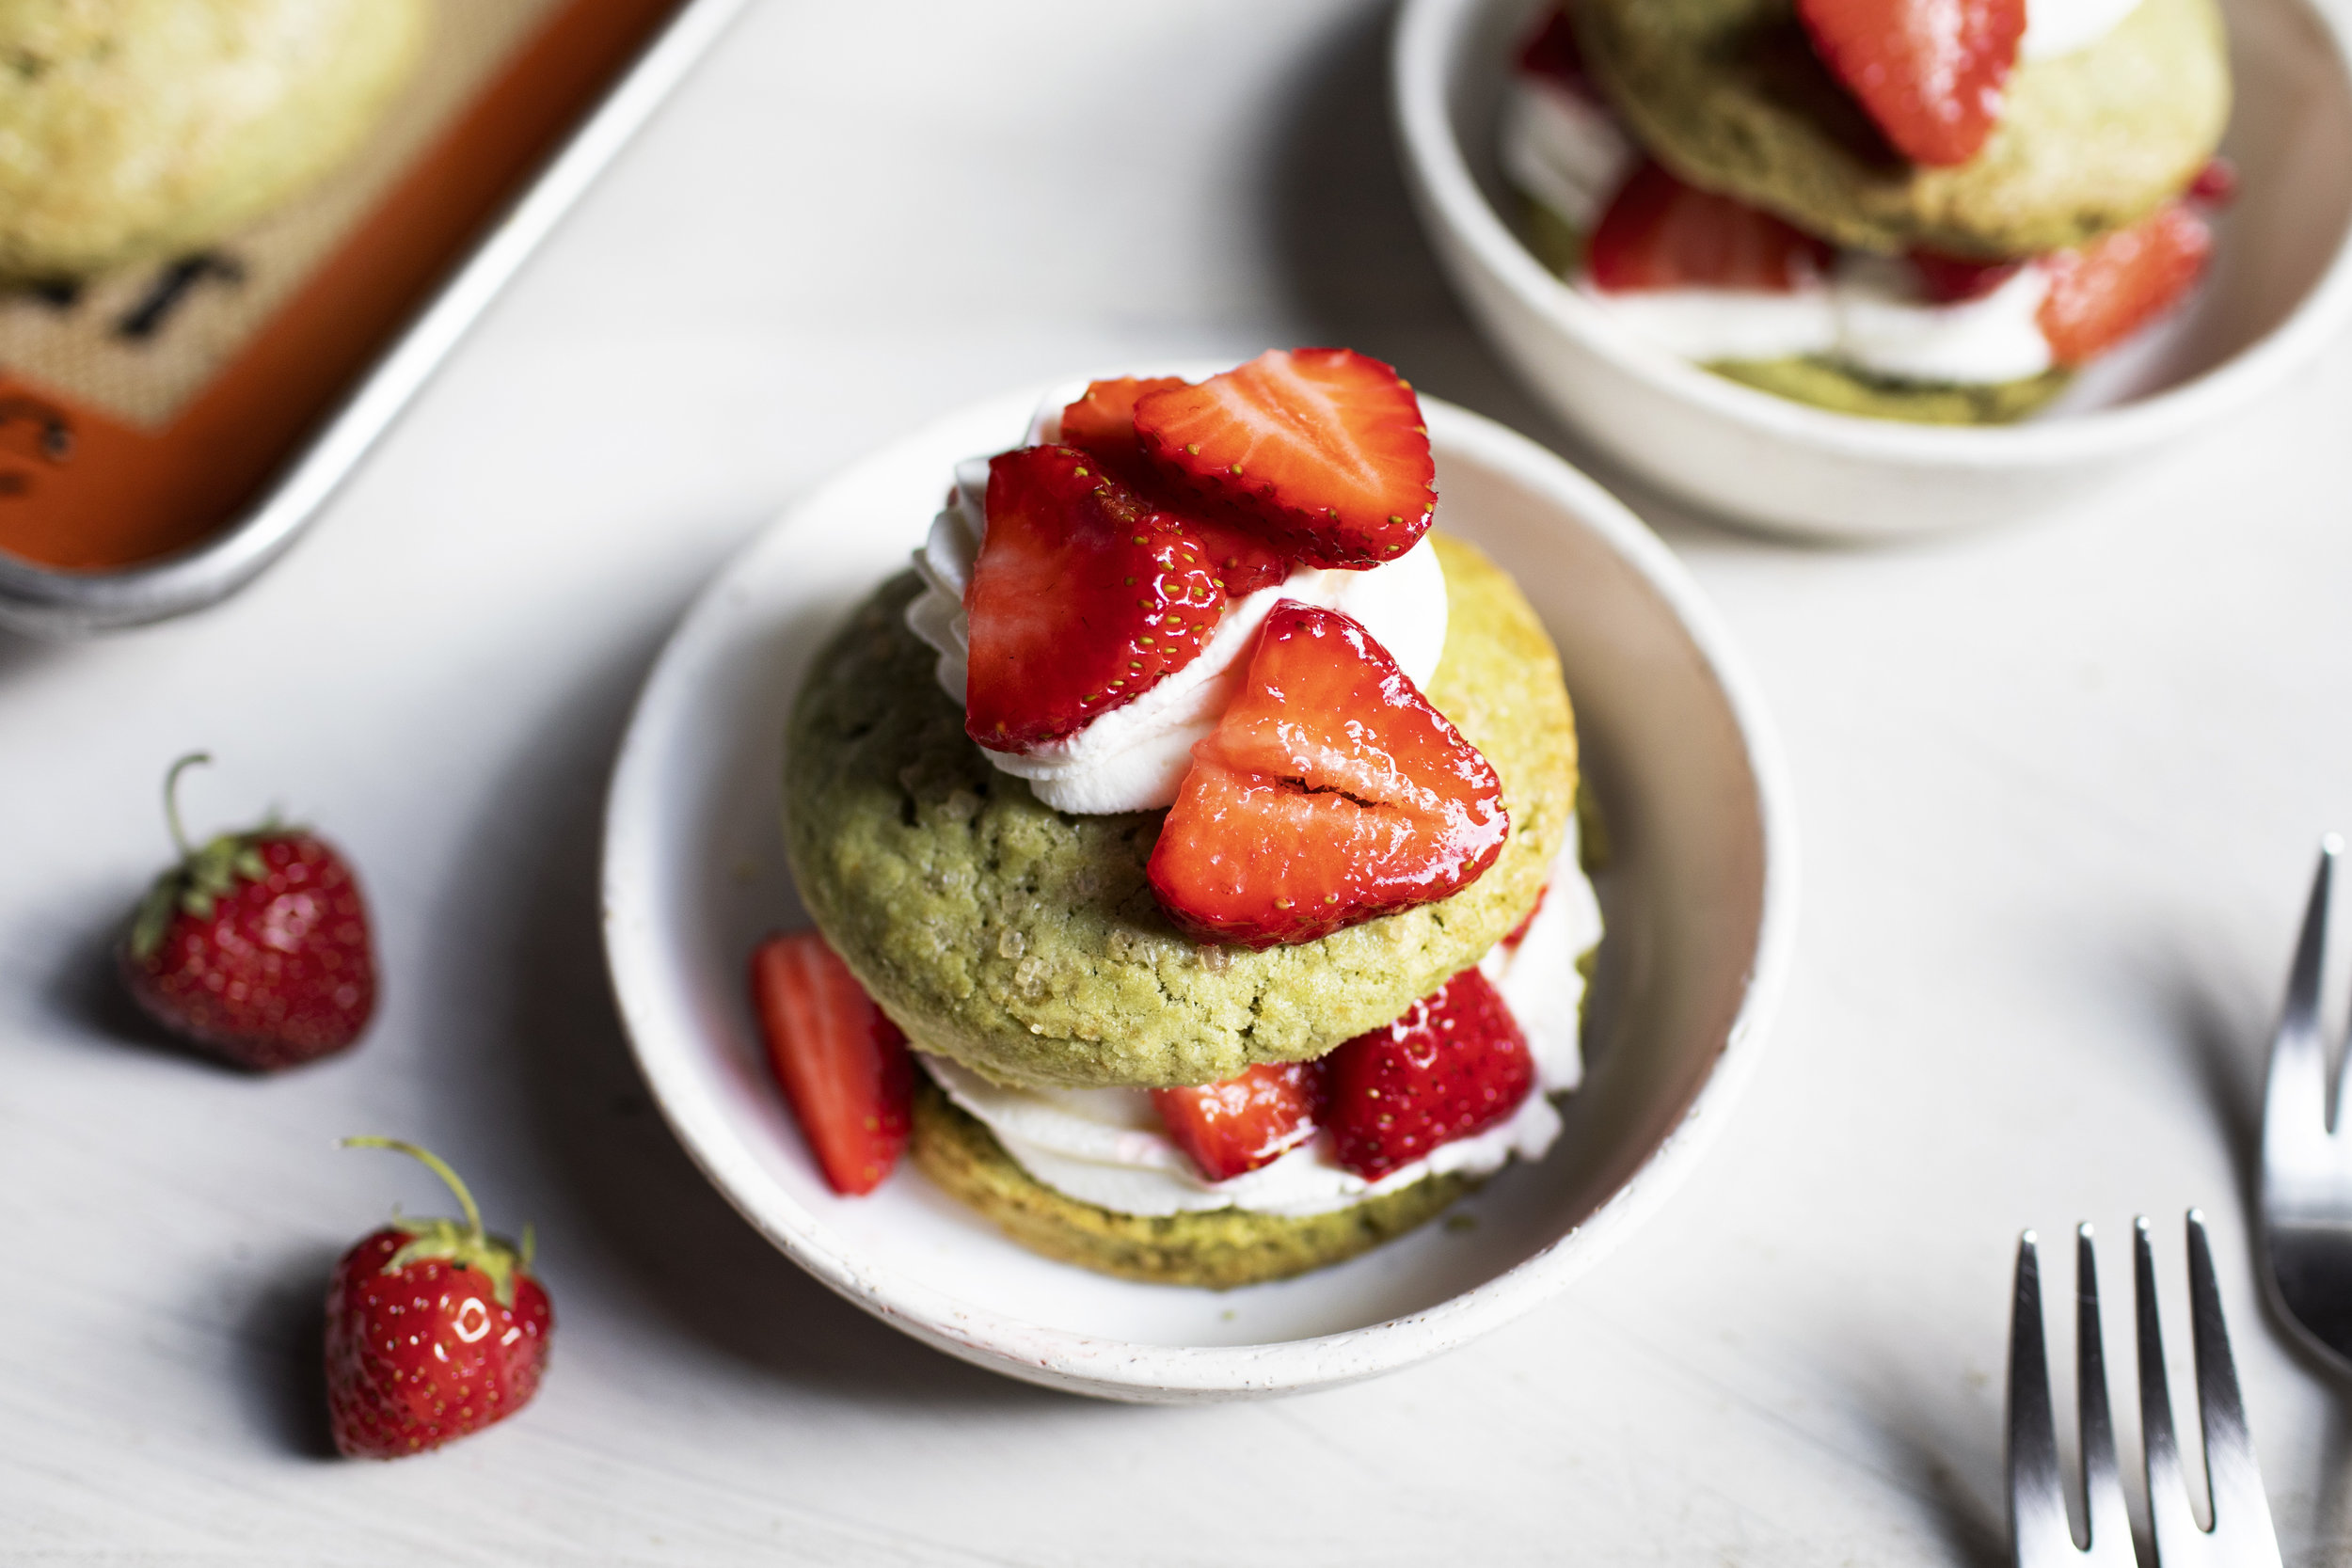 green tea strawberry shortcake ii.jpg